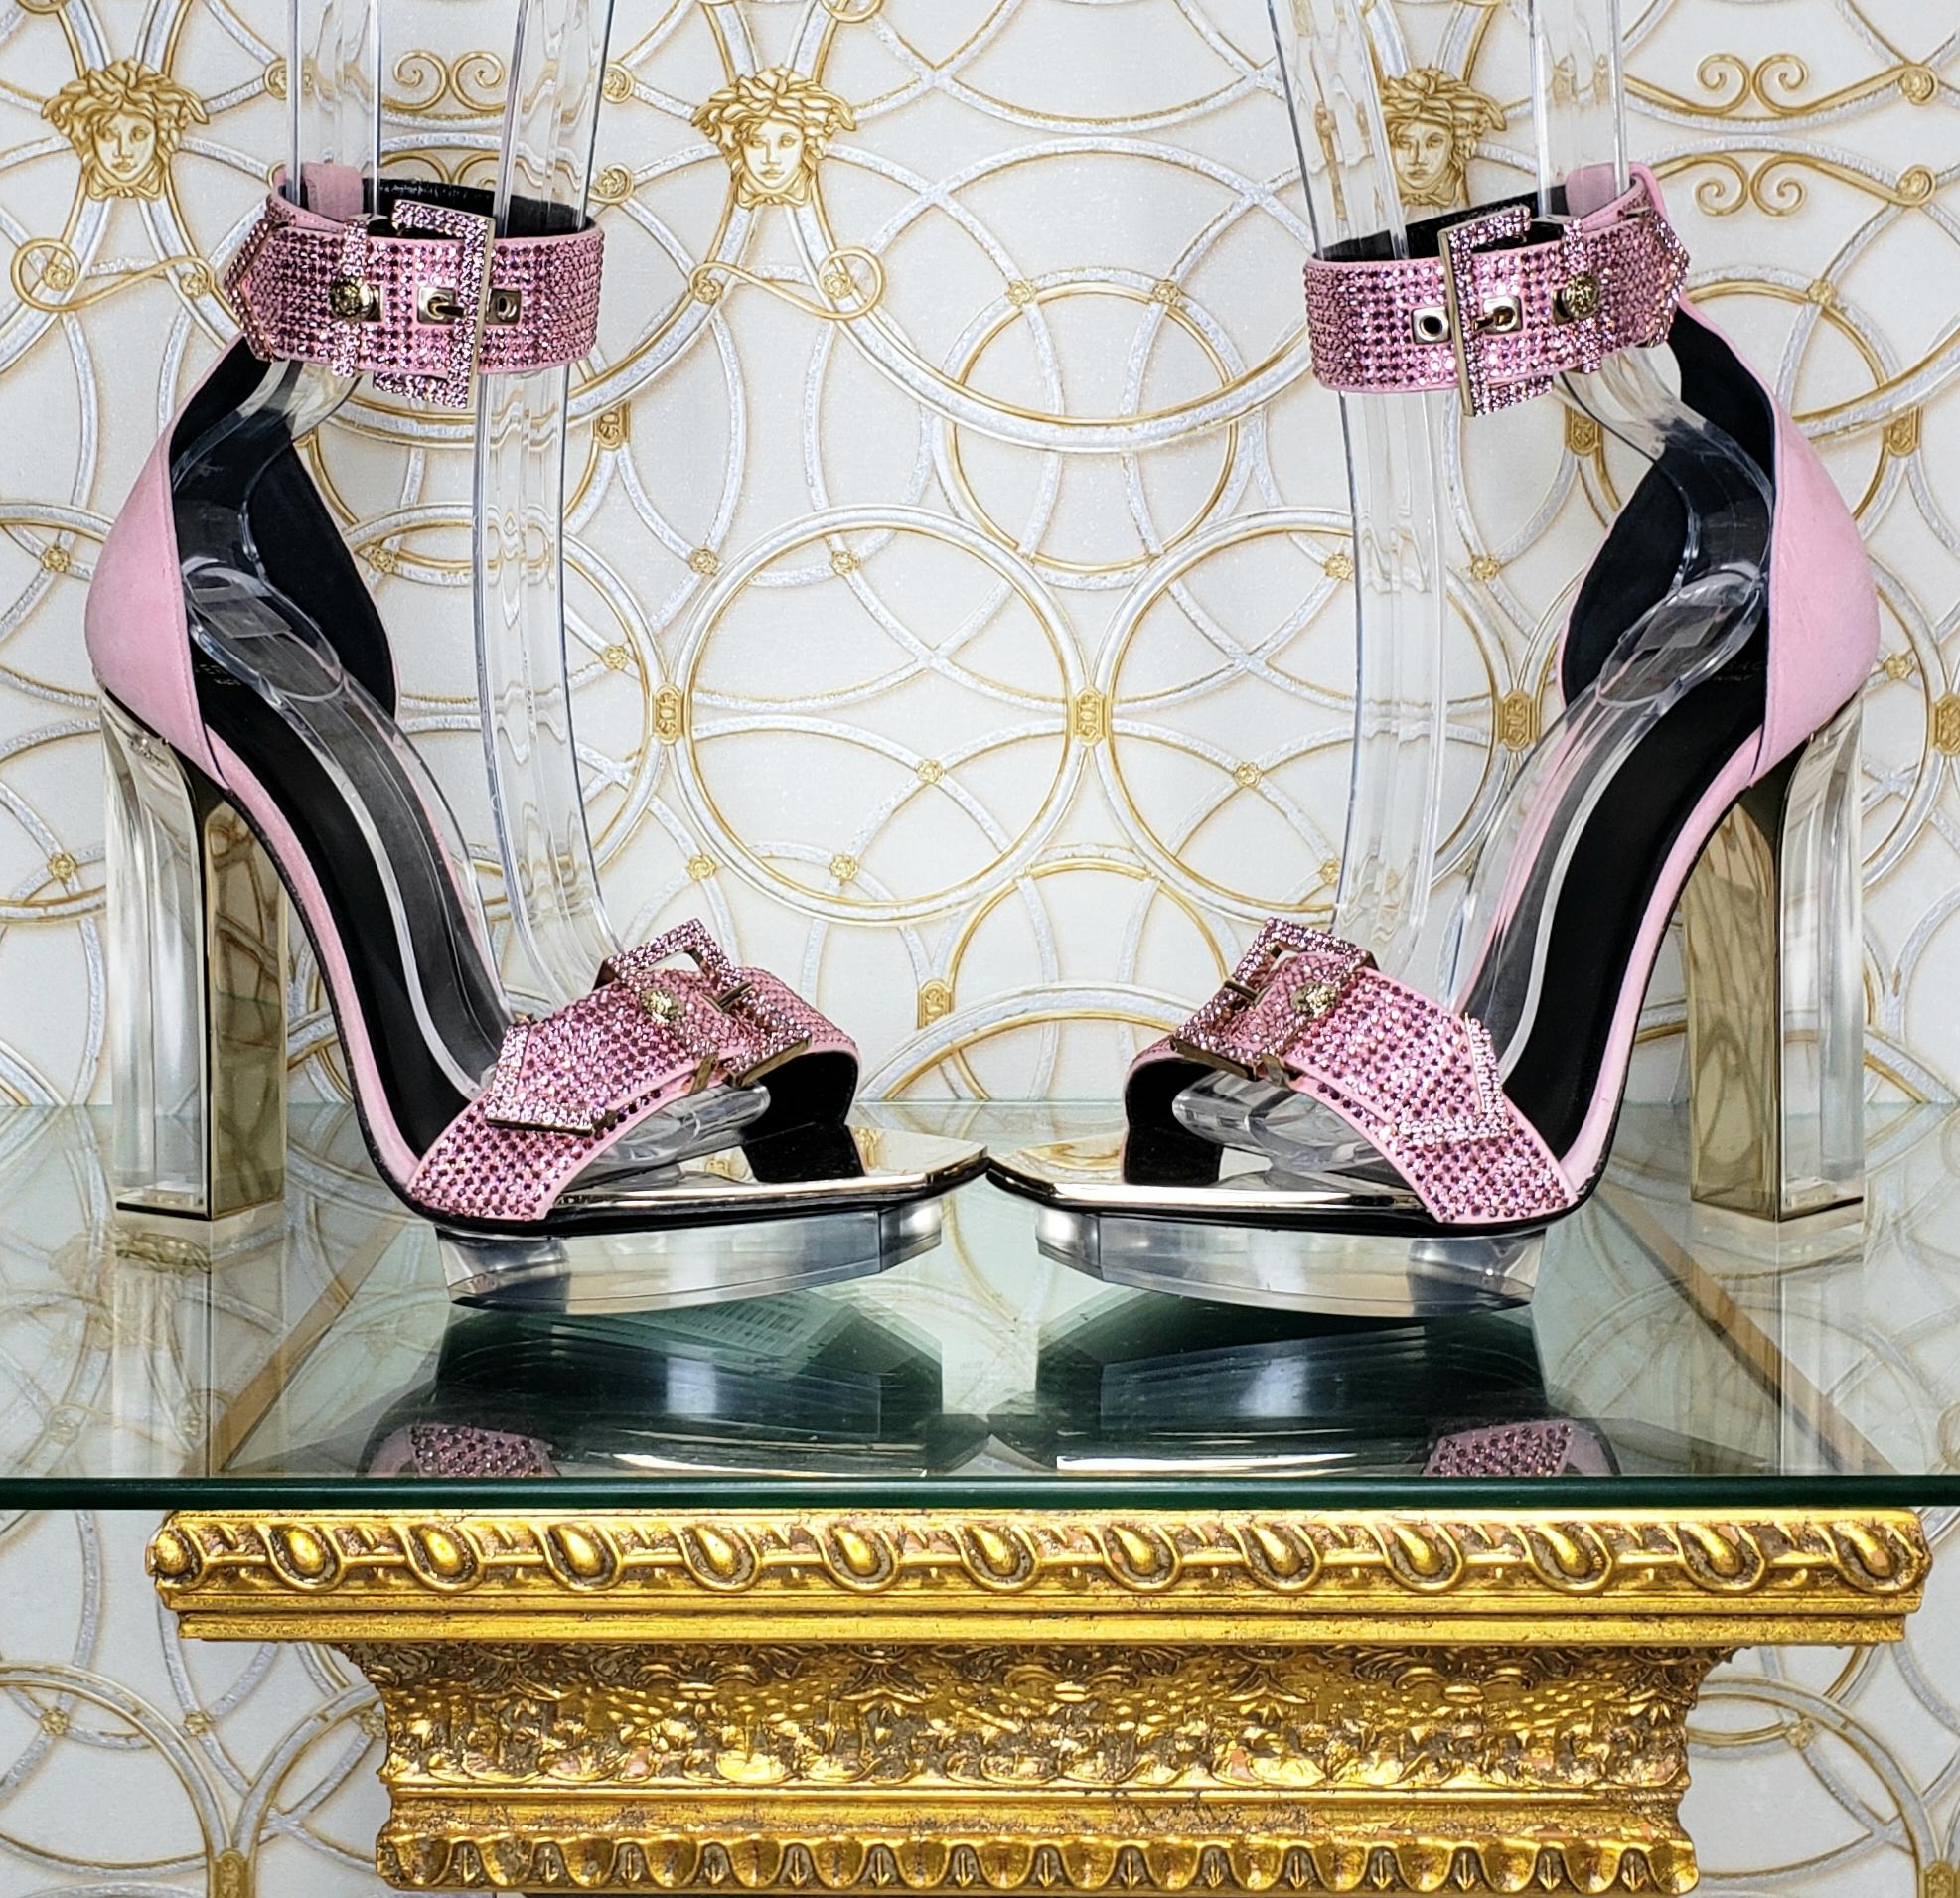 S/S 2015 look # 48 VERSACE pink crystal embellished plexiglass platform sandals 1